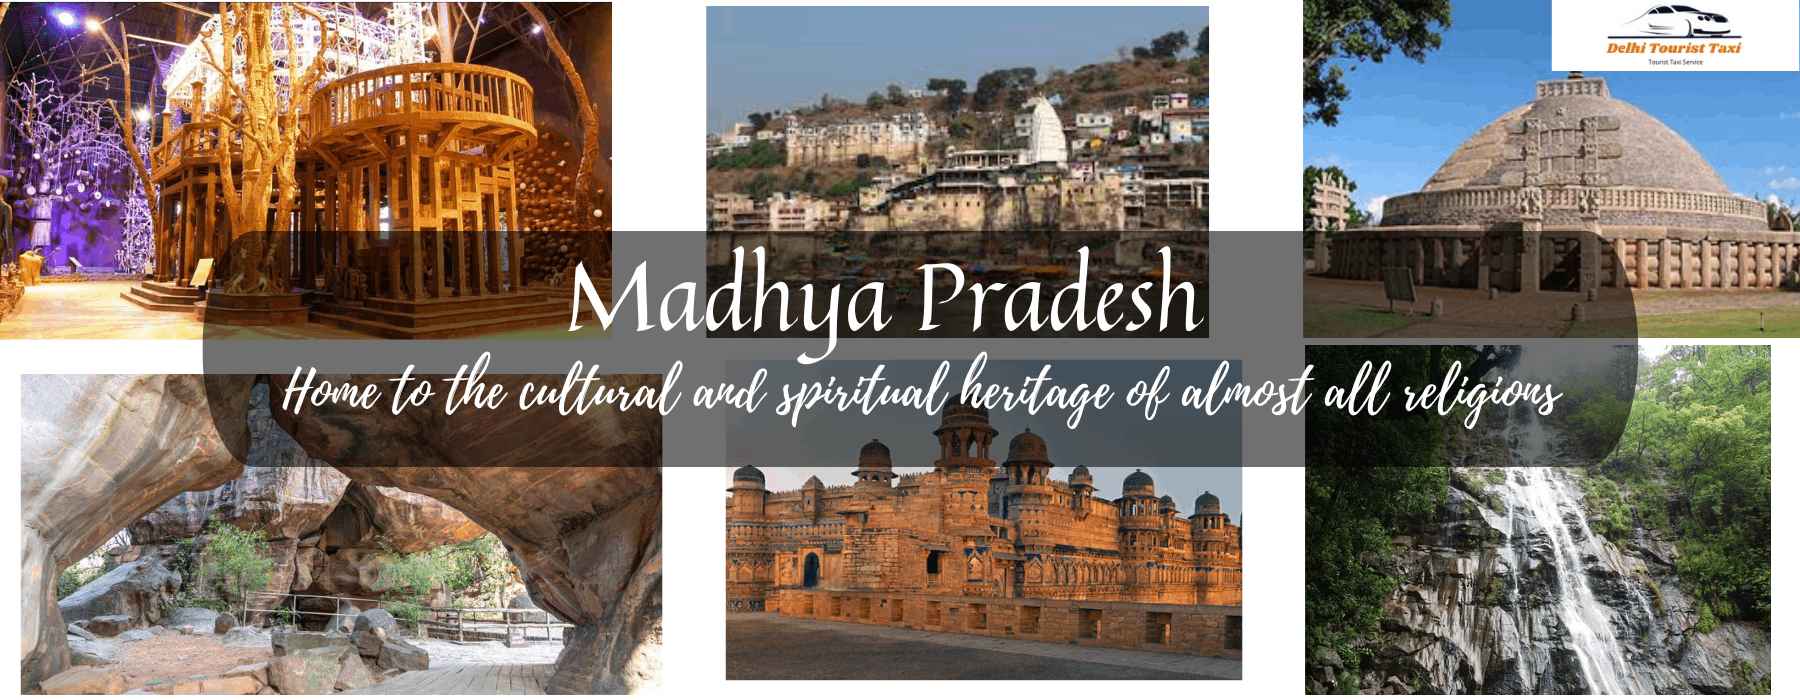 Madhya Pradesh_tourist_place